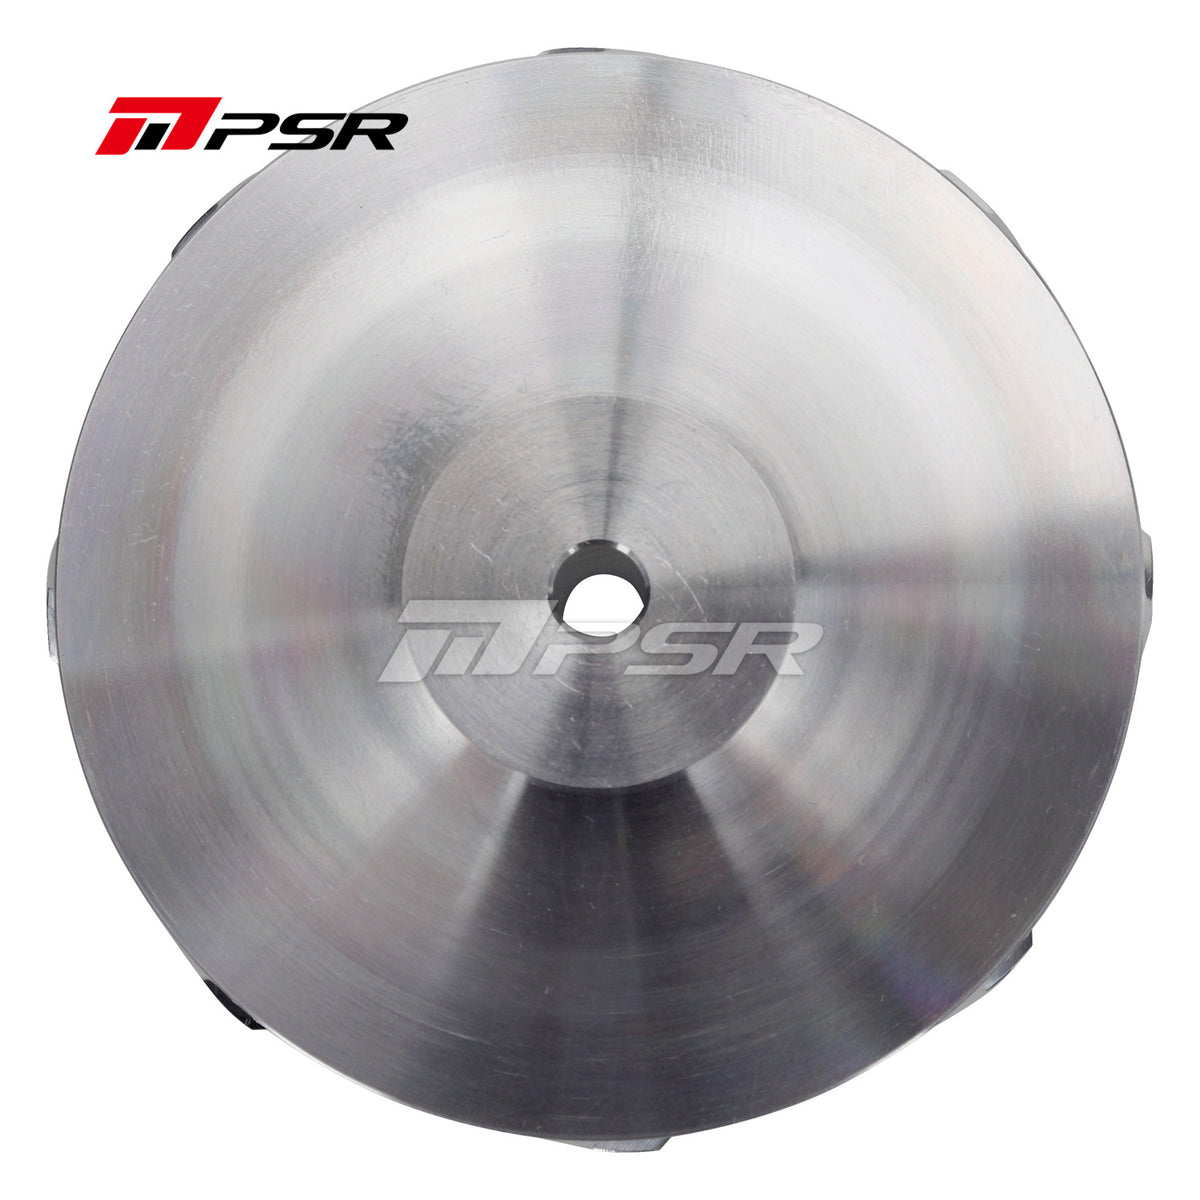 Pulsar Billet compressor wheel for GTX GEN II